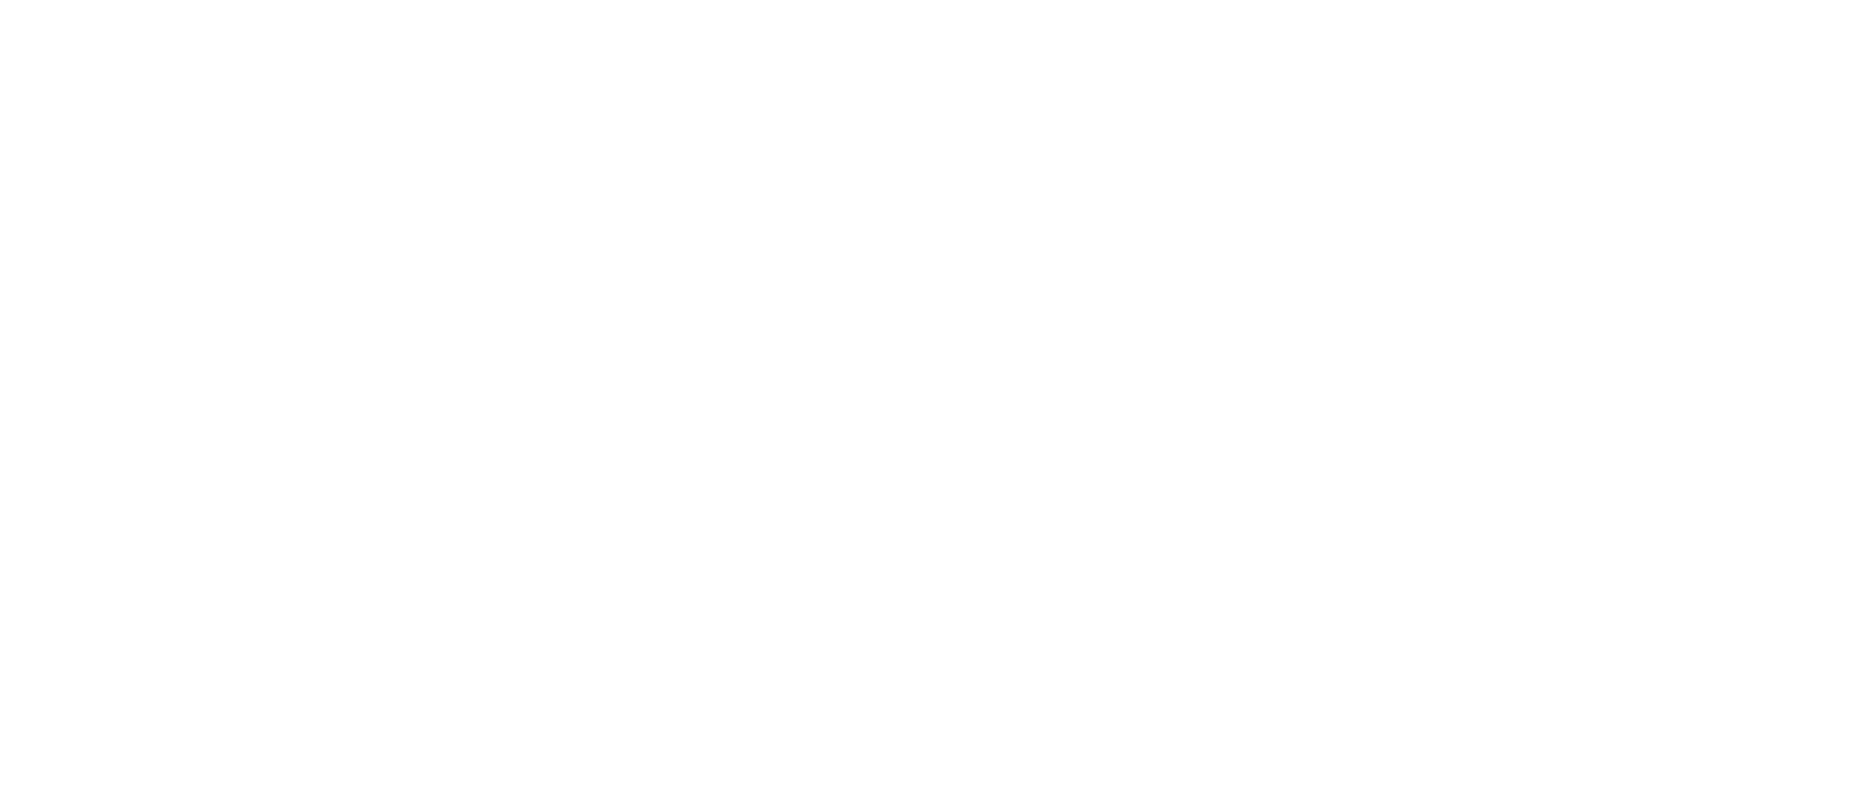 MSS